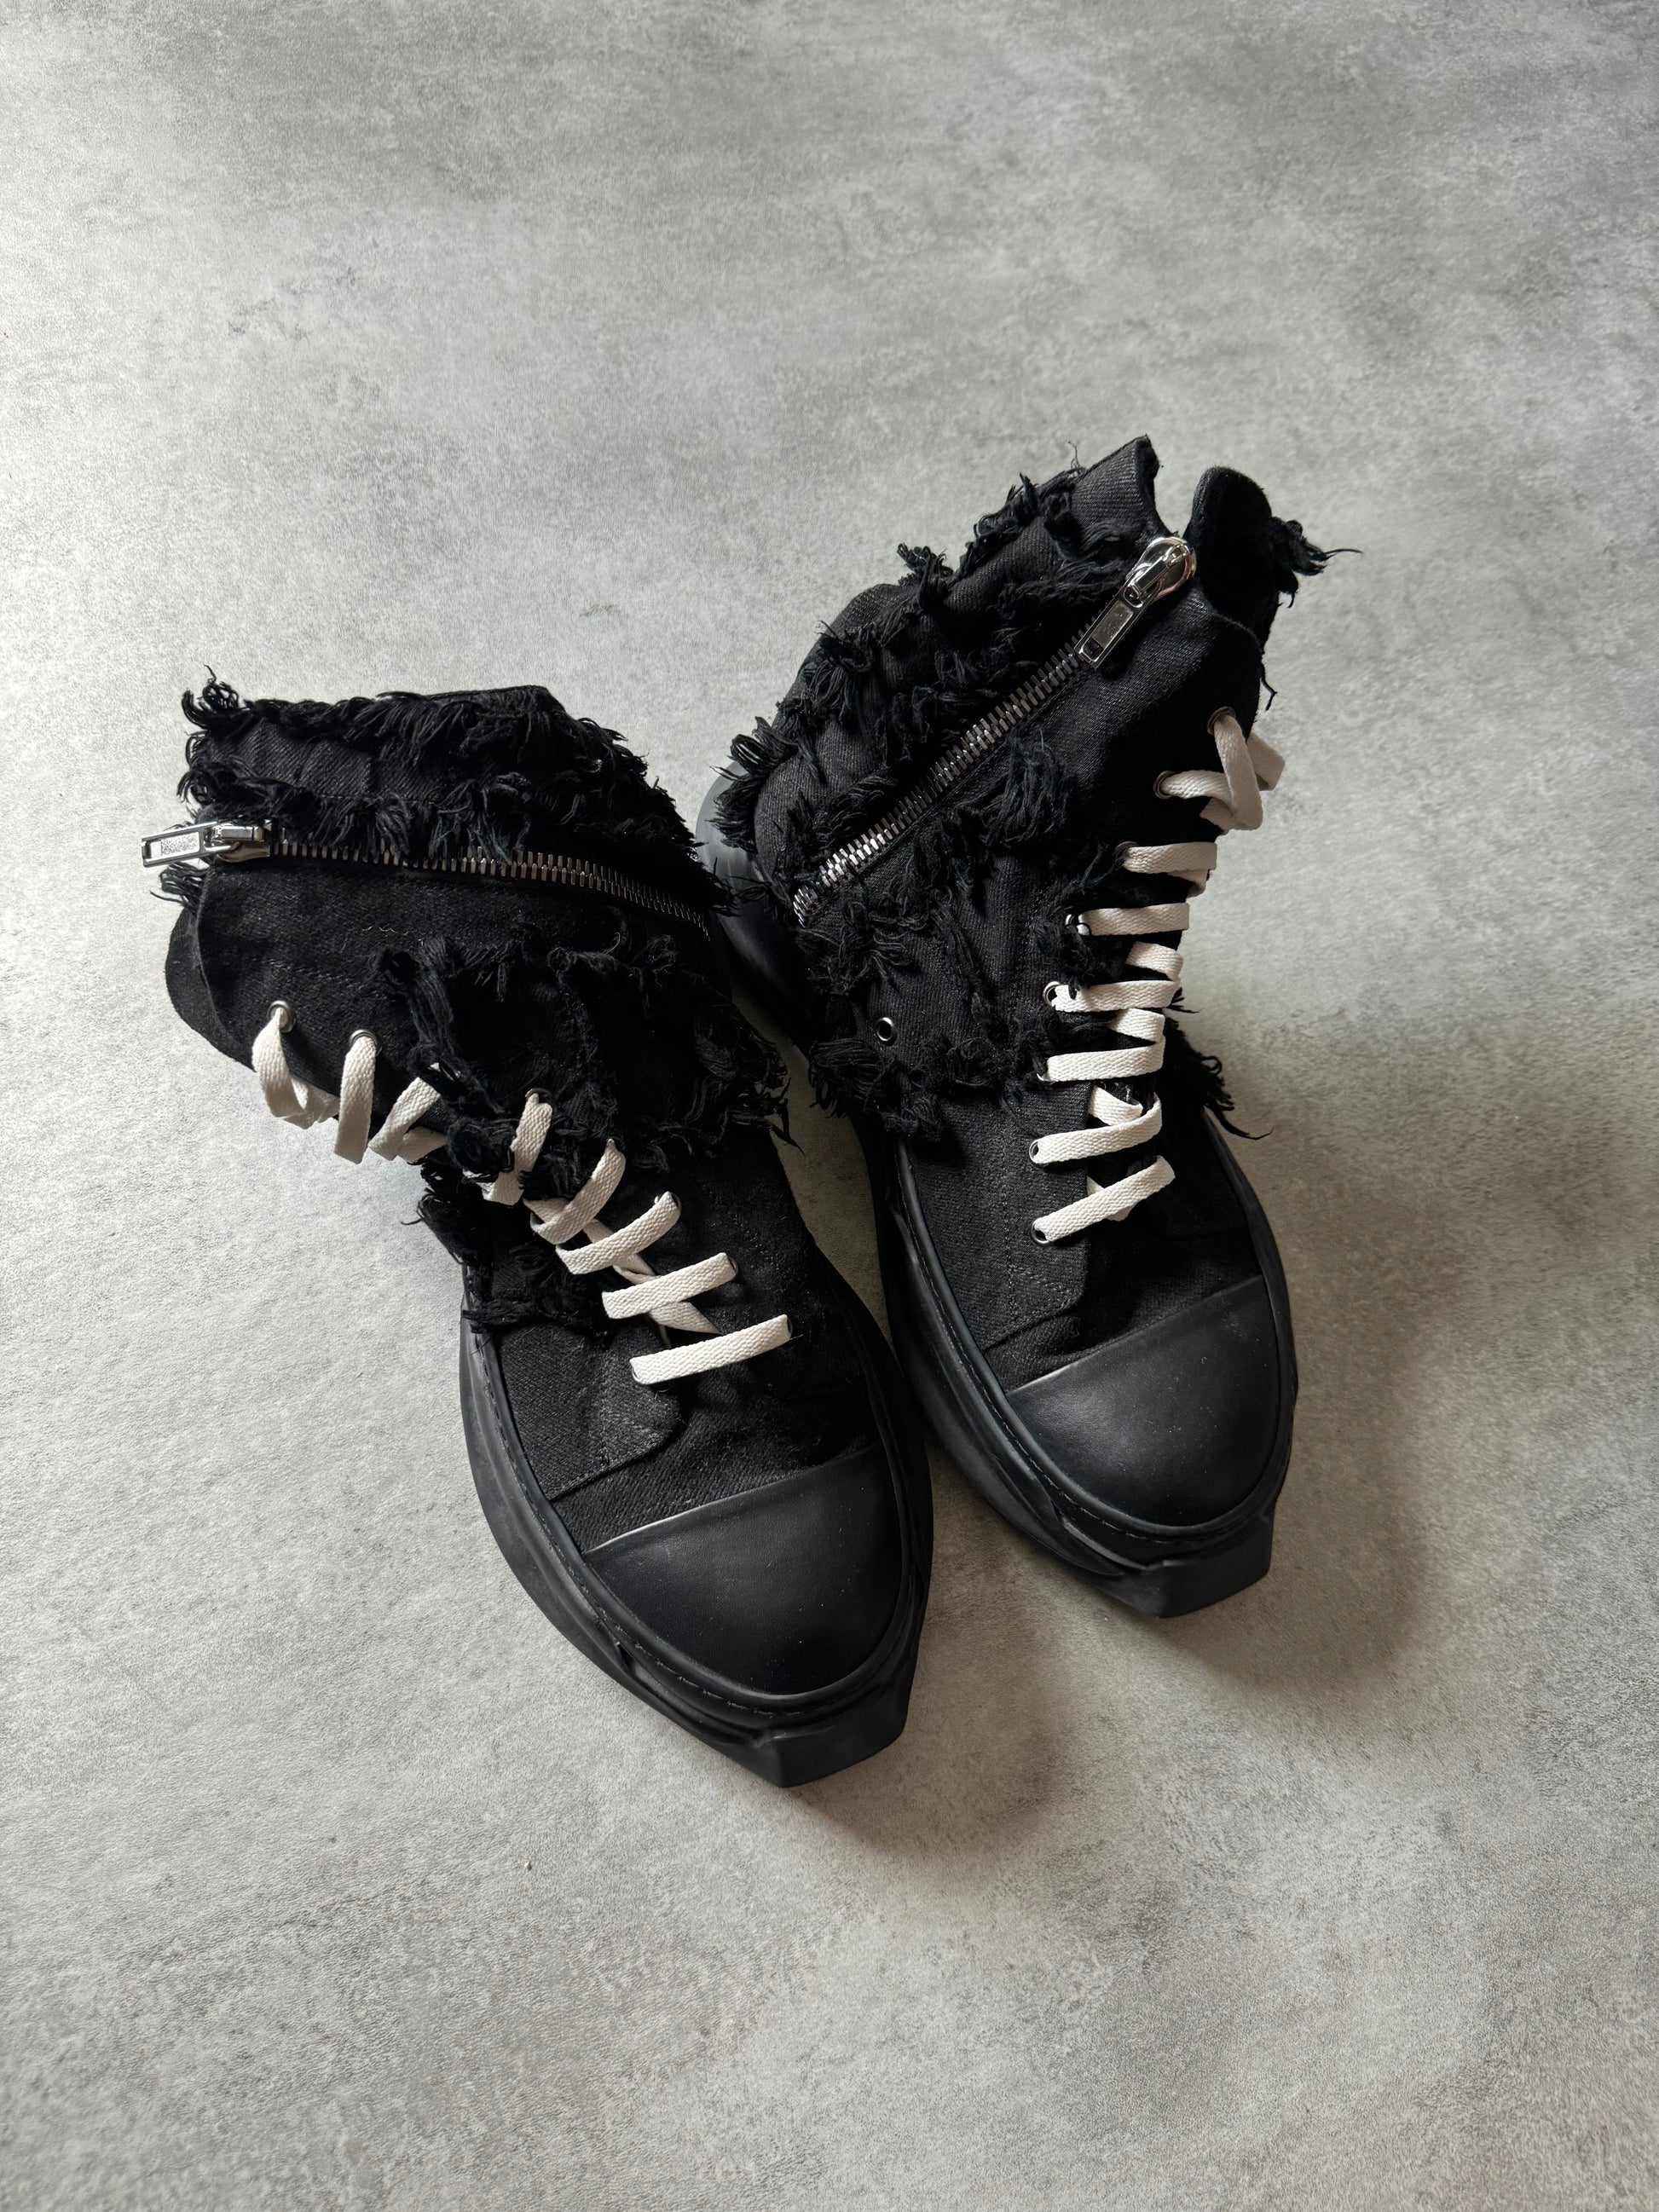 Rick Owens DRKSHDW Abstract Gethsemane Distressed Black Shoes (45) - 6